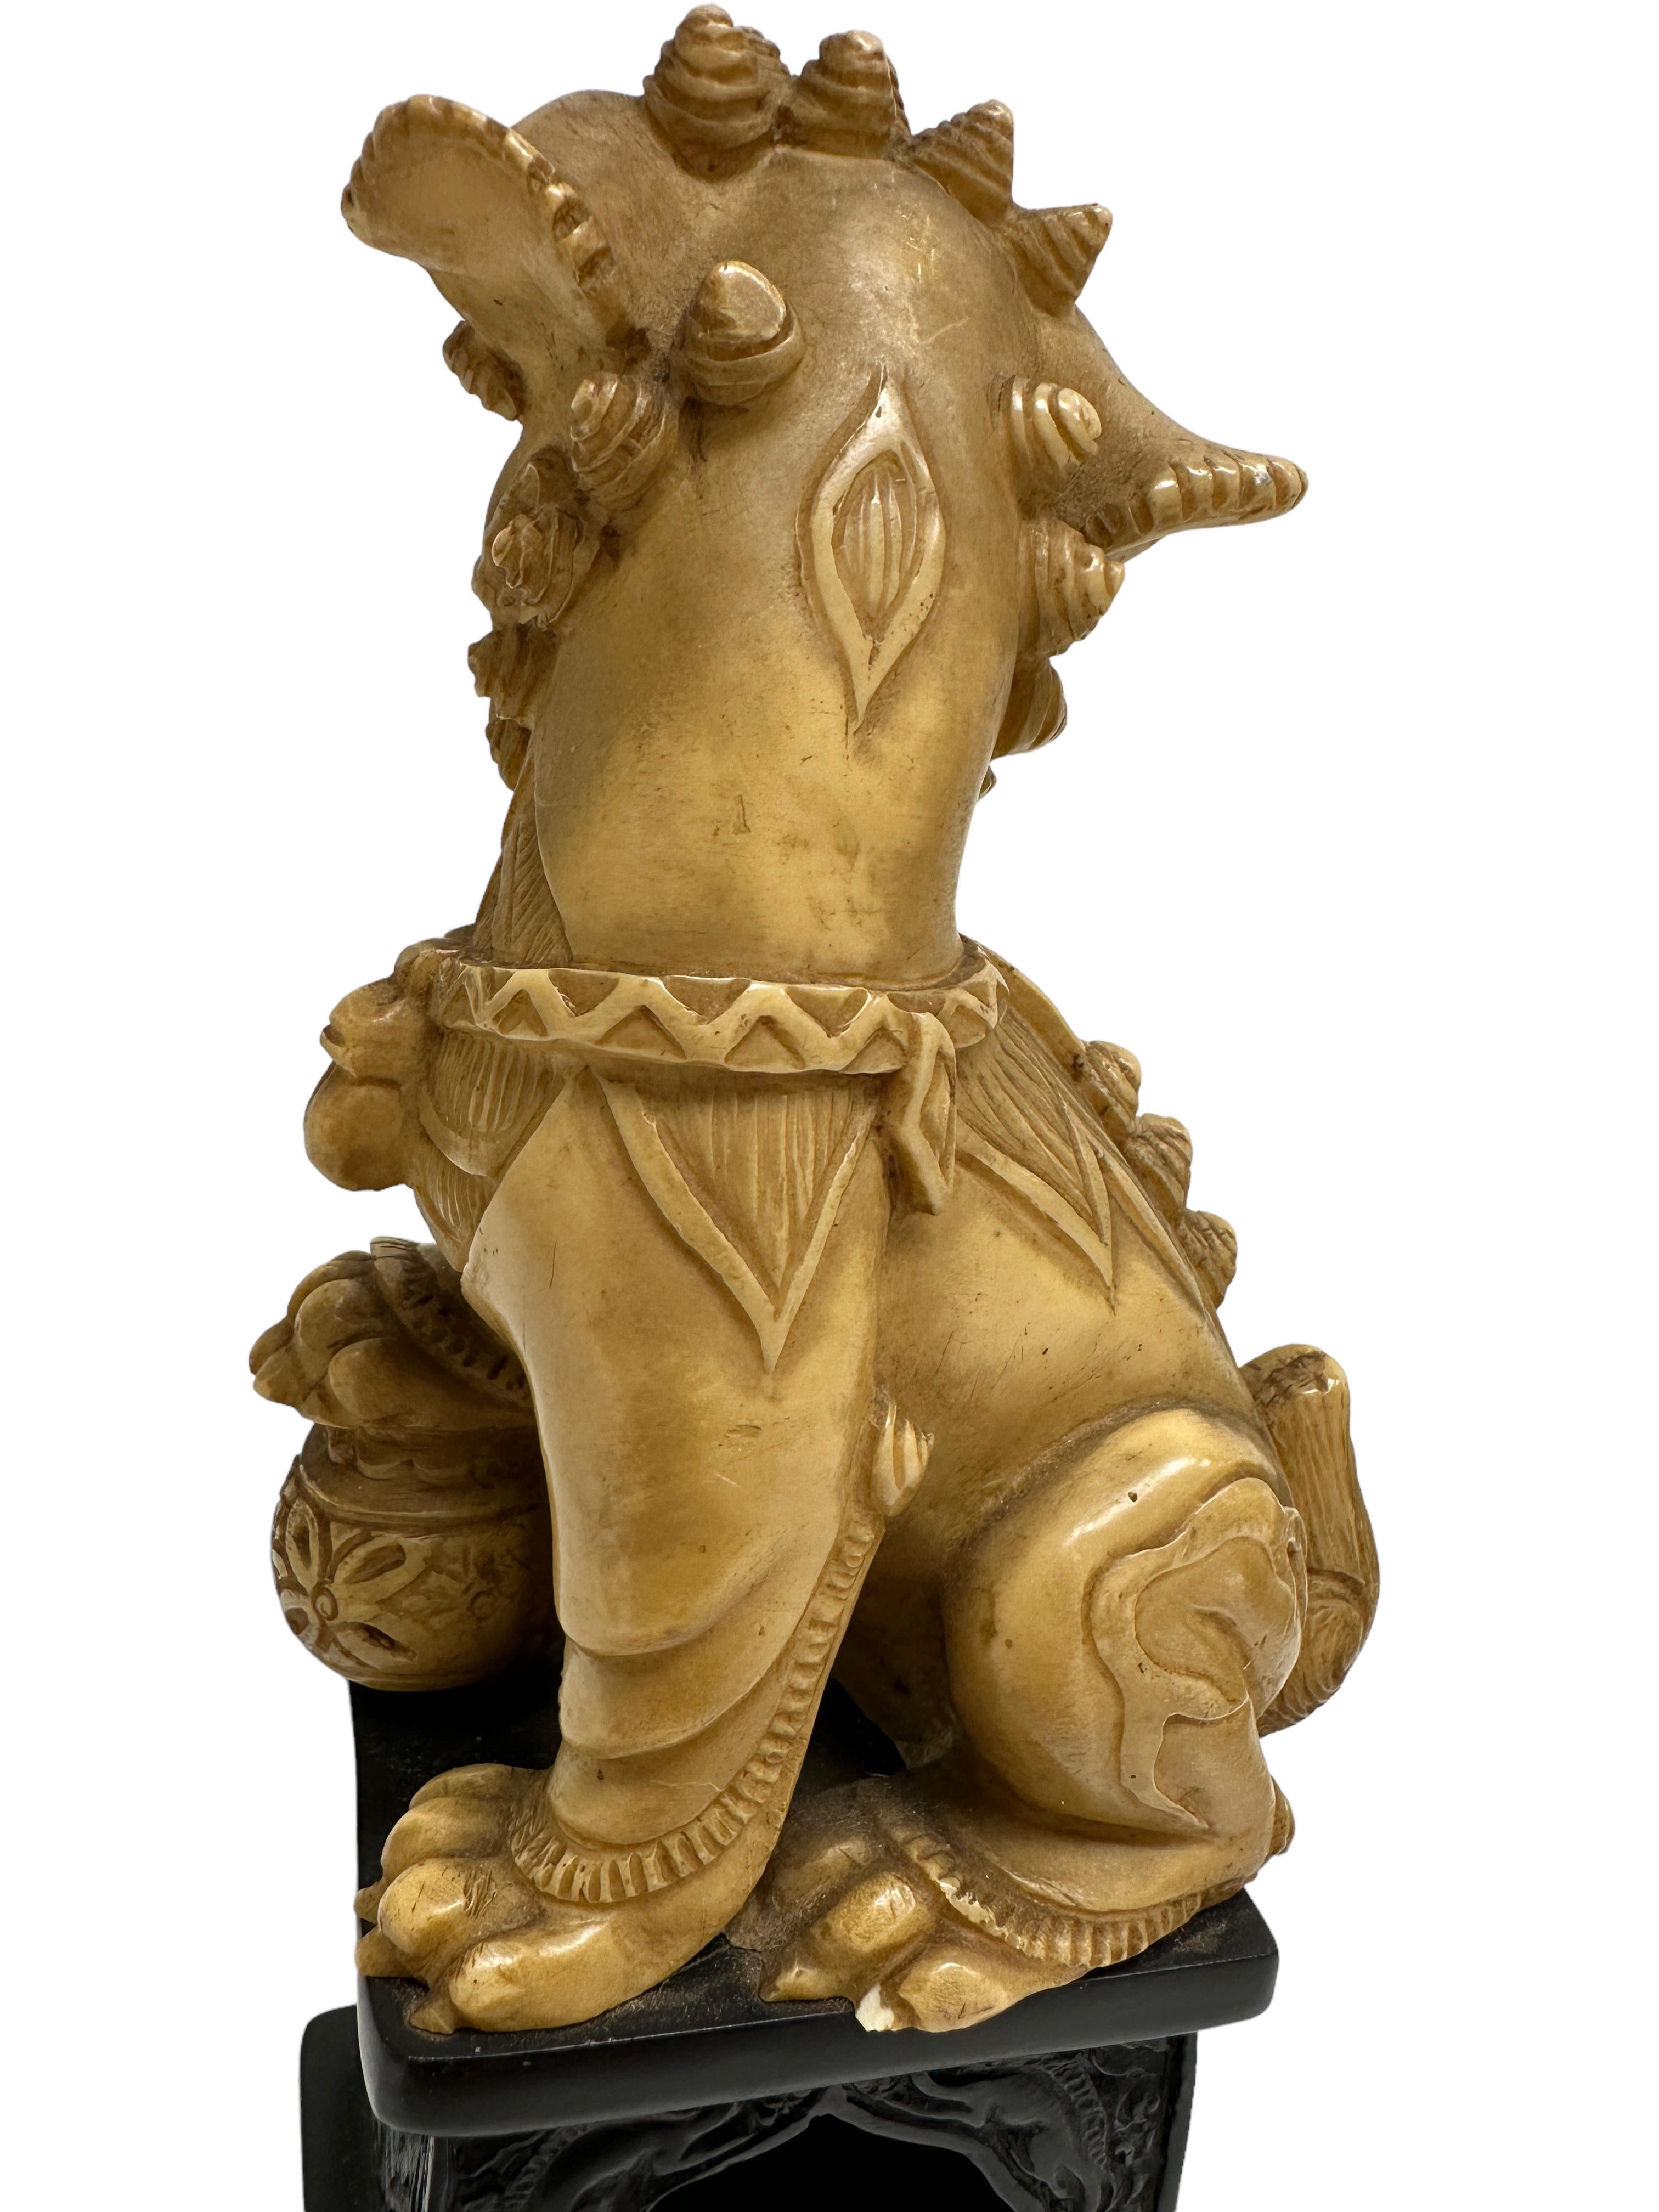 Unique Pair of Decorative Foo Dogs Temple Lion Bookends Sculptures For Sale 1